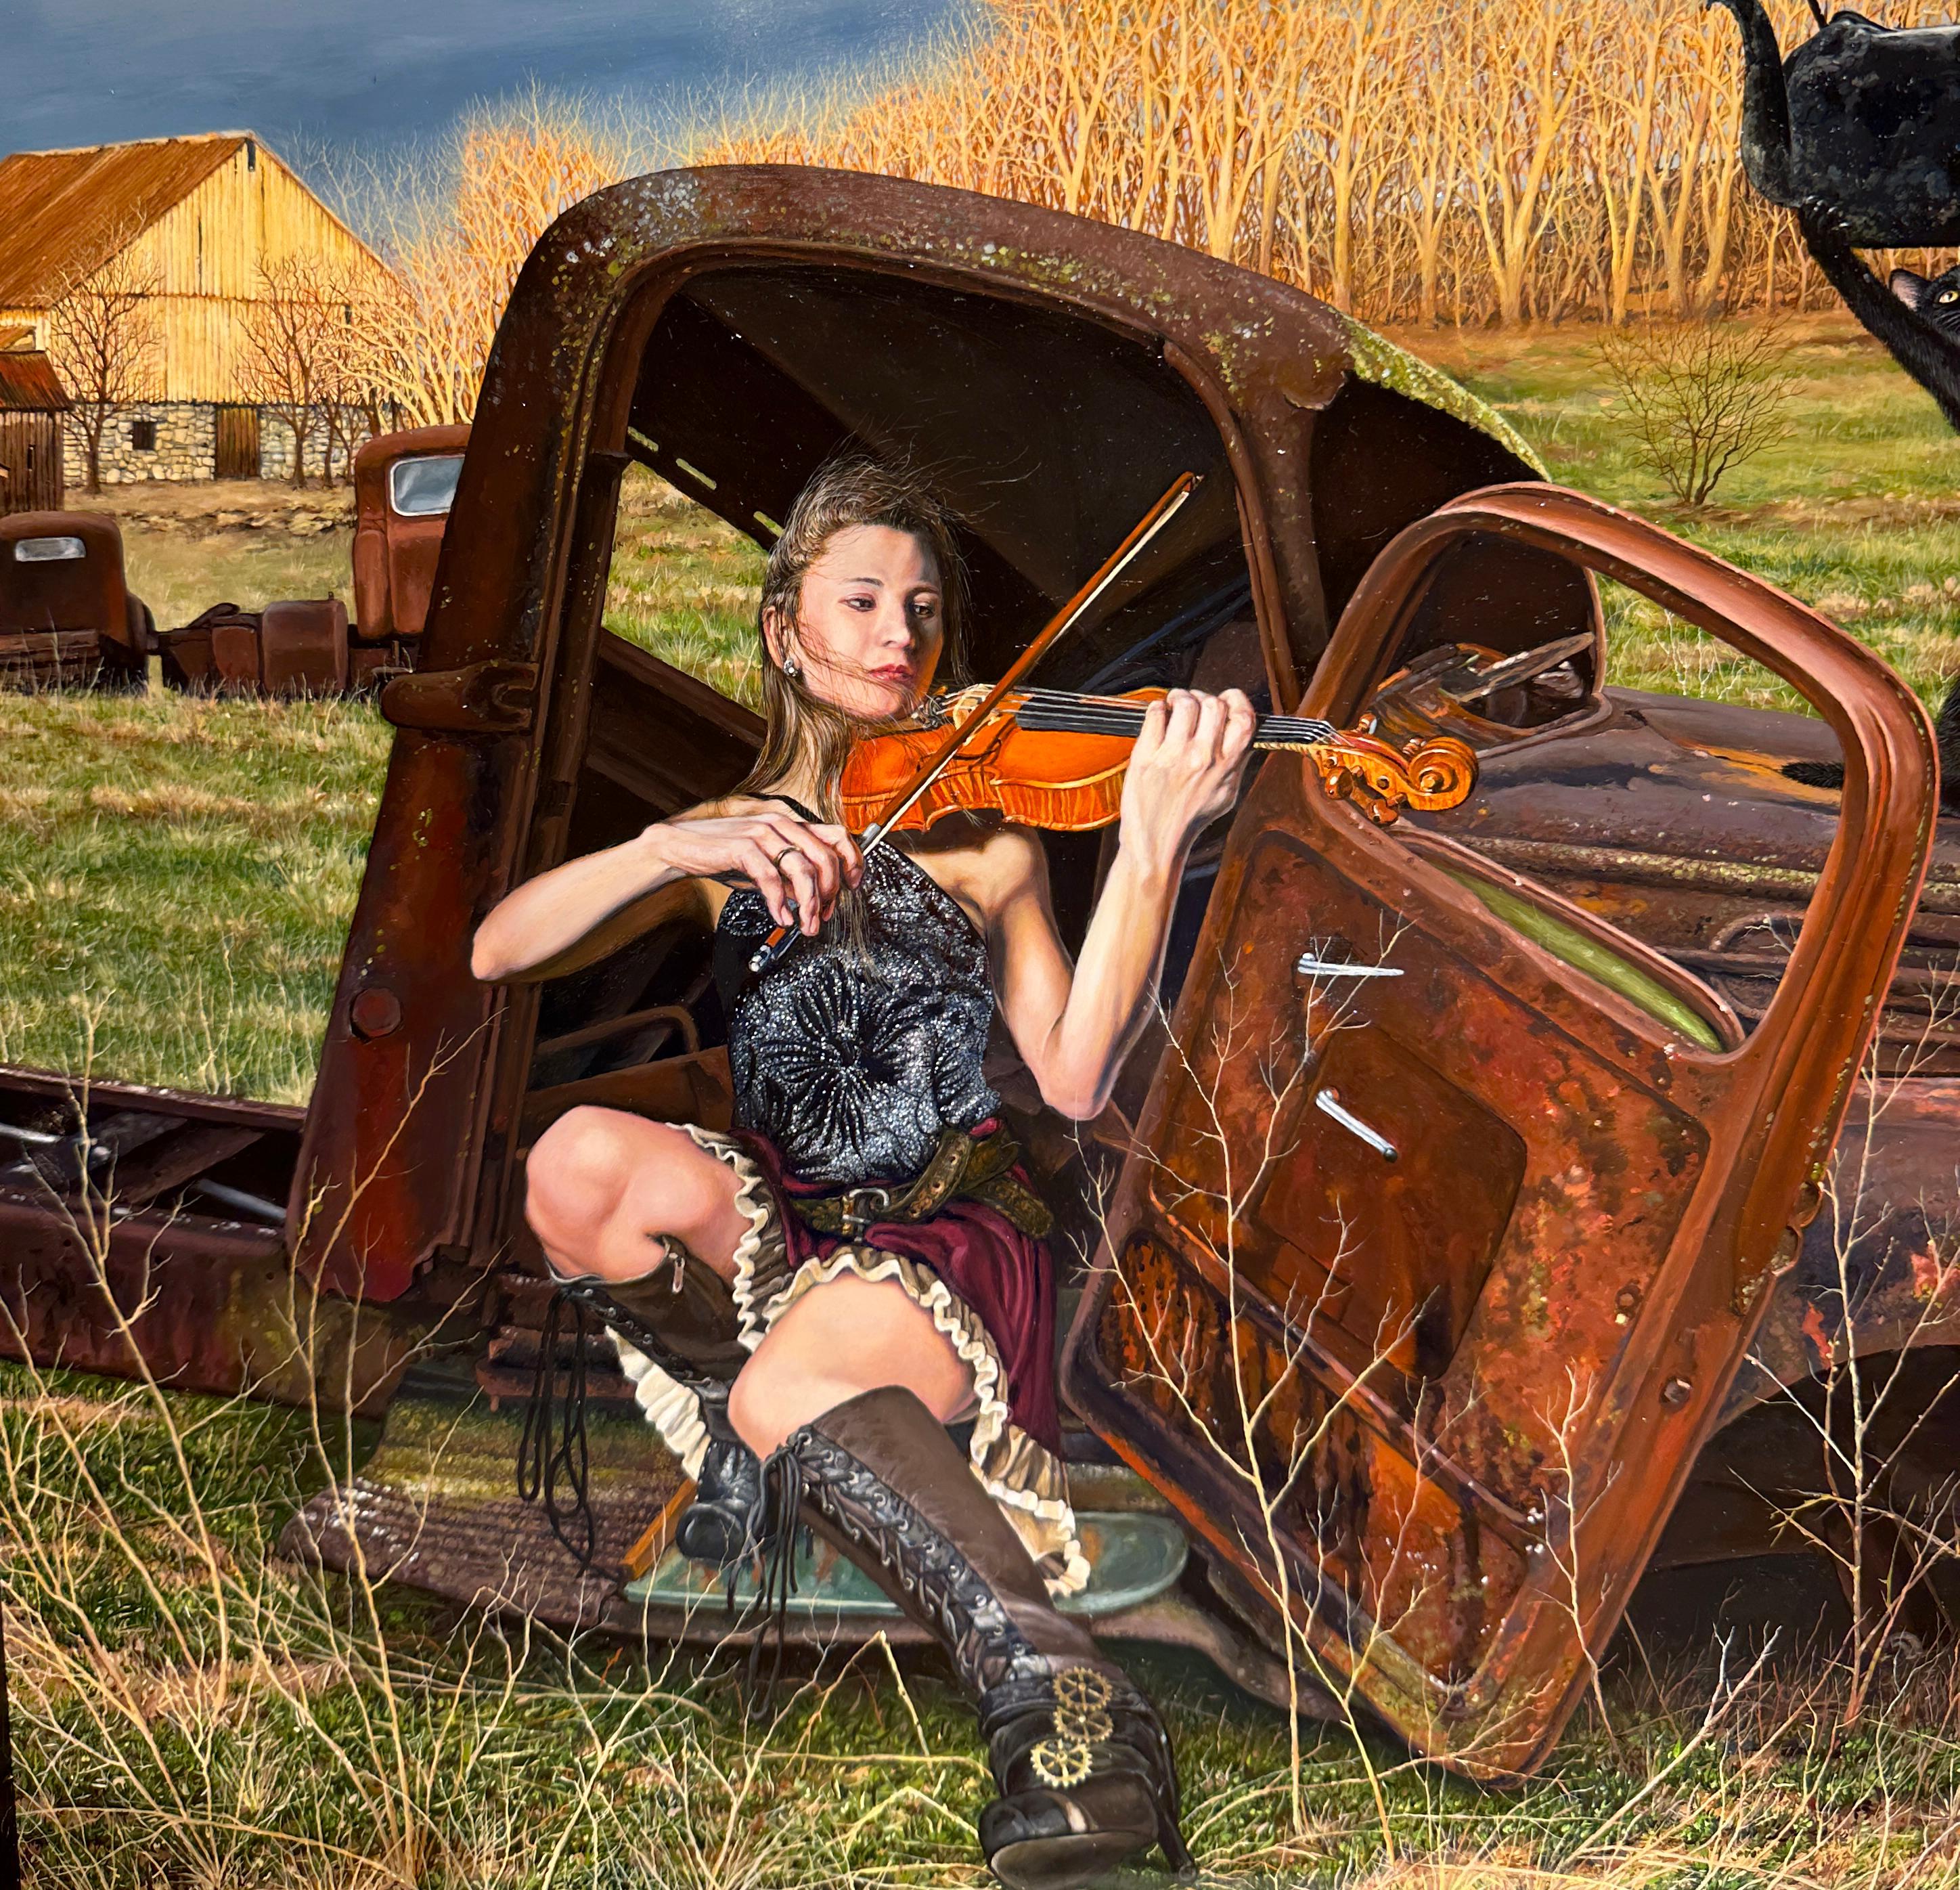 The Sound of the Changing Season - Scne rurale surraliste, hyperraliste - Surréalisme Painting par Christopher Klein